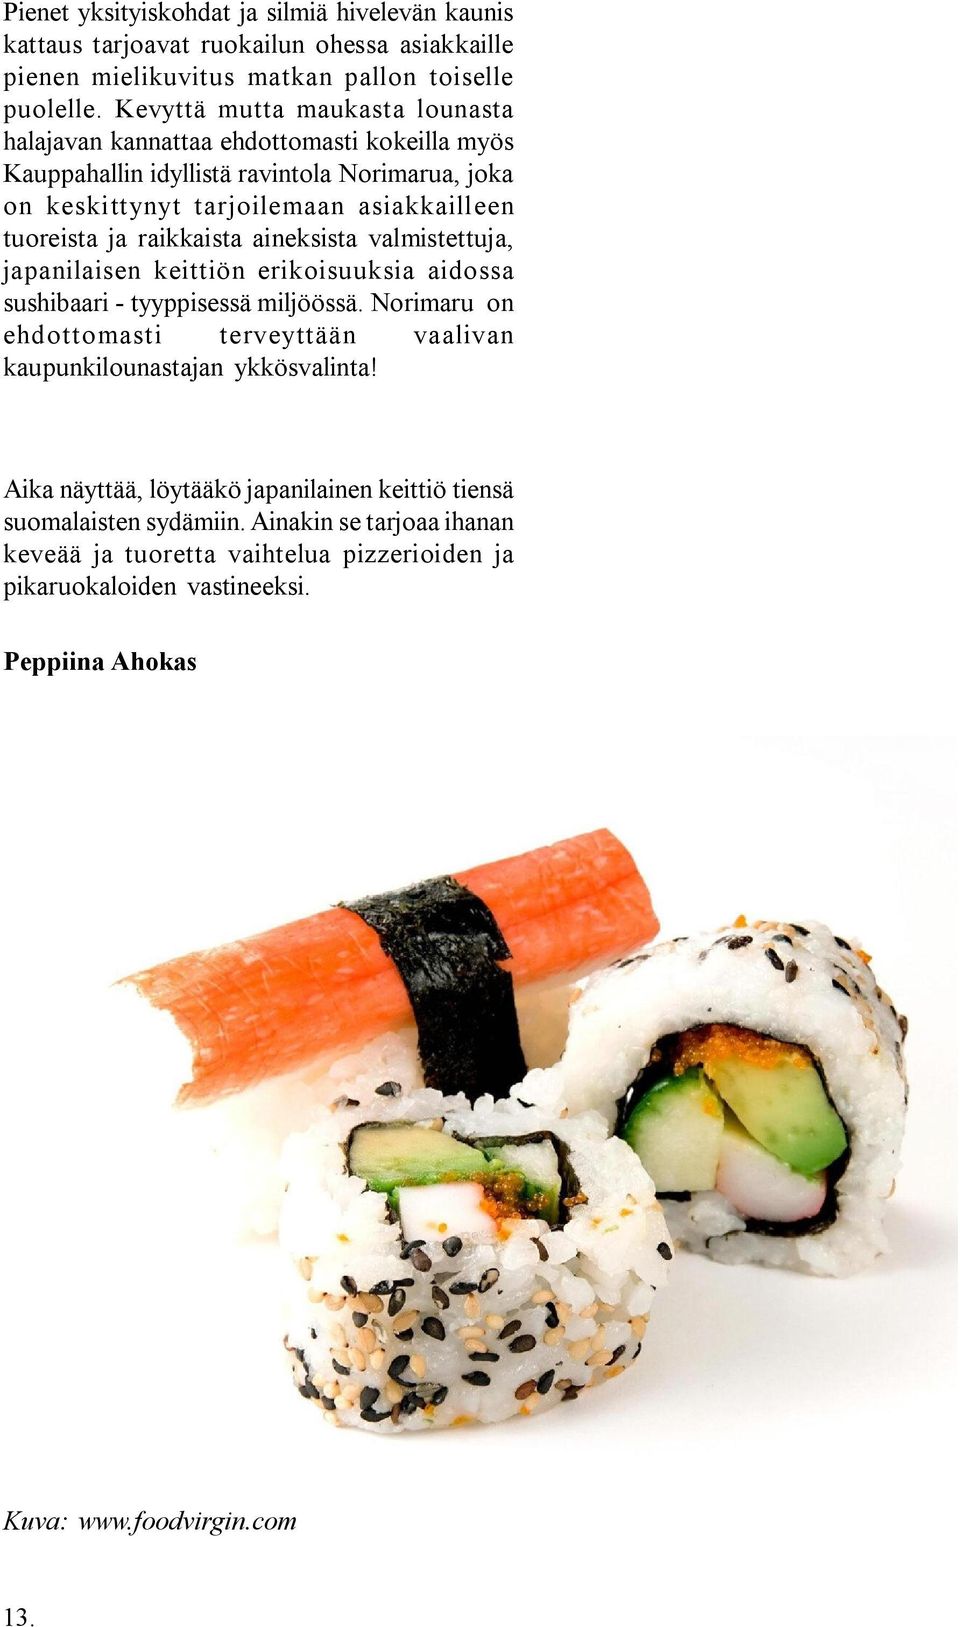 raikkaista aineksista valmistettuja, japanilaisen keittiön erikoisuuksia aidossa sushibaari - tyyppisessä miljöössä.